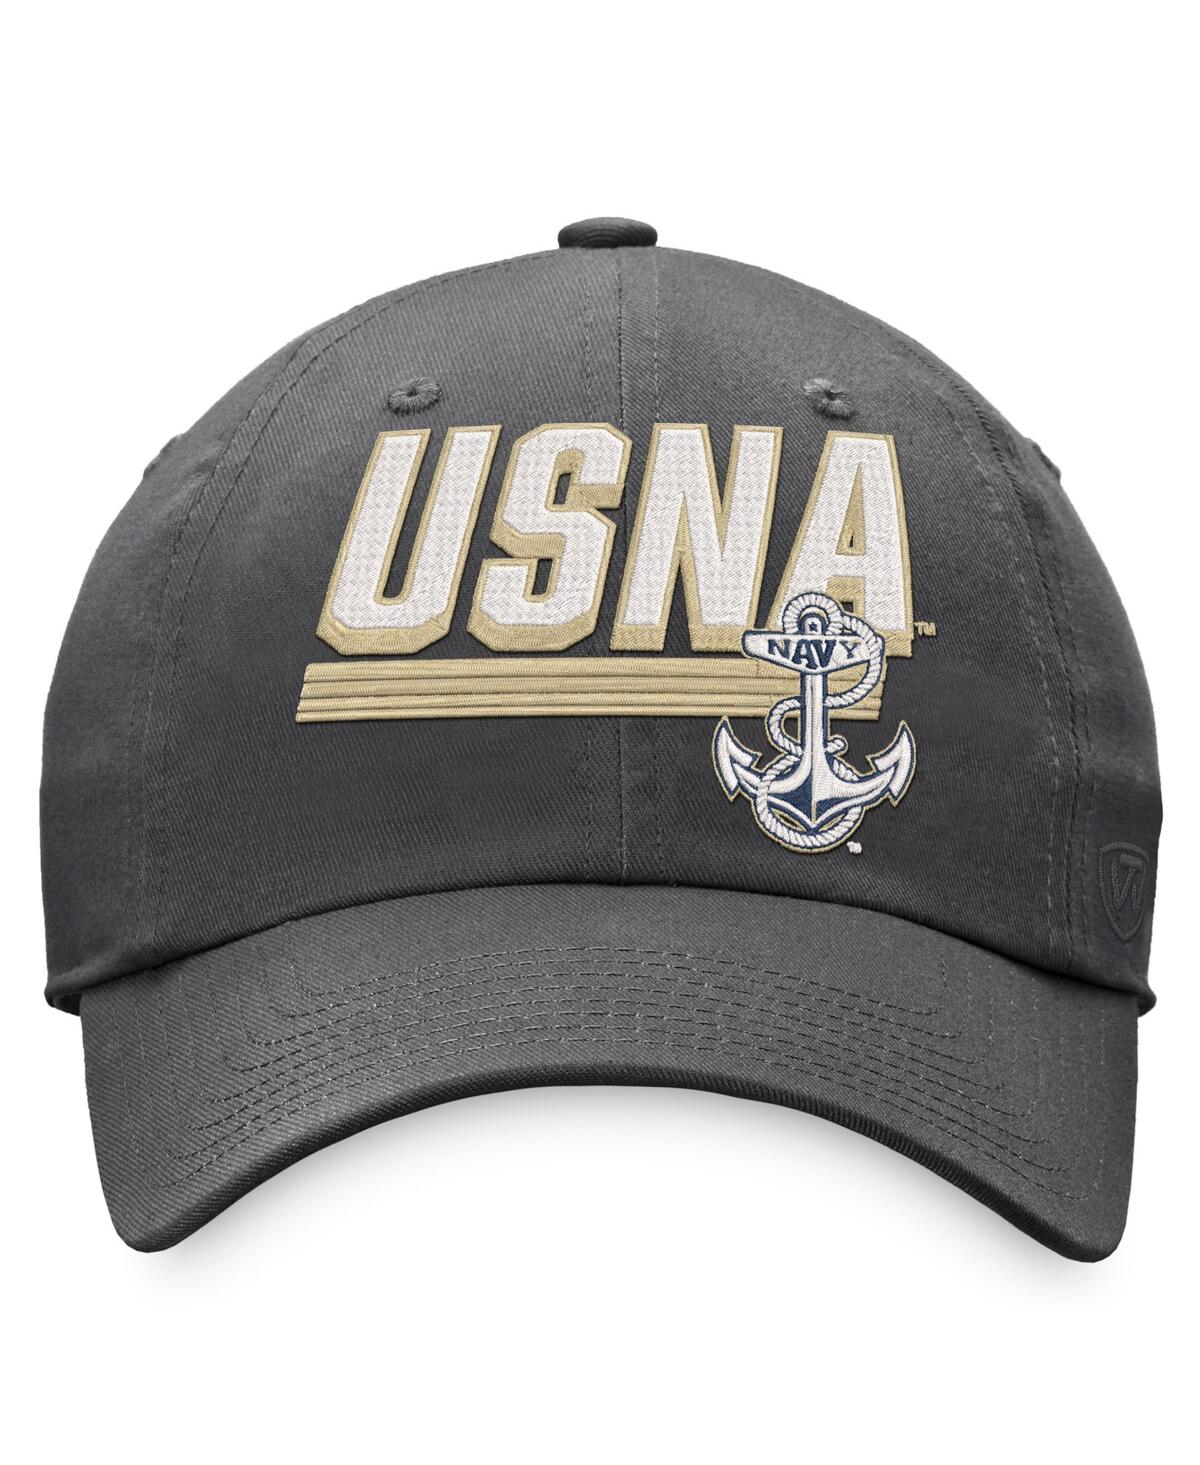 Shop Top Of The World Men's  Charcoal Navy Midshipmen Slice Adjustable Hat